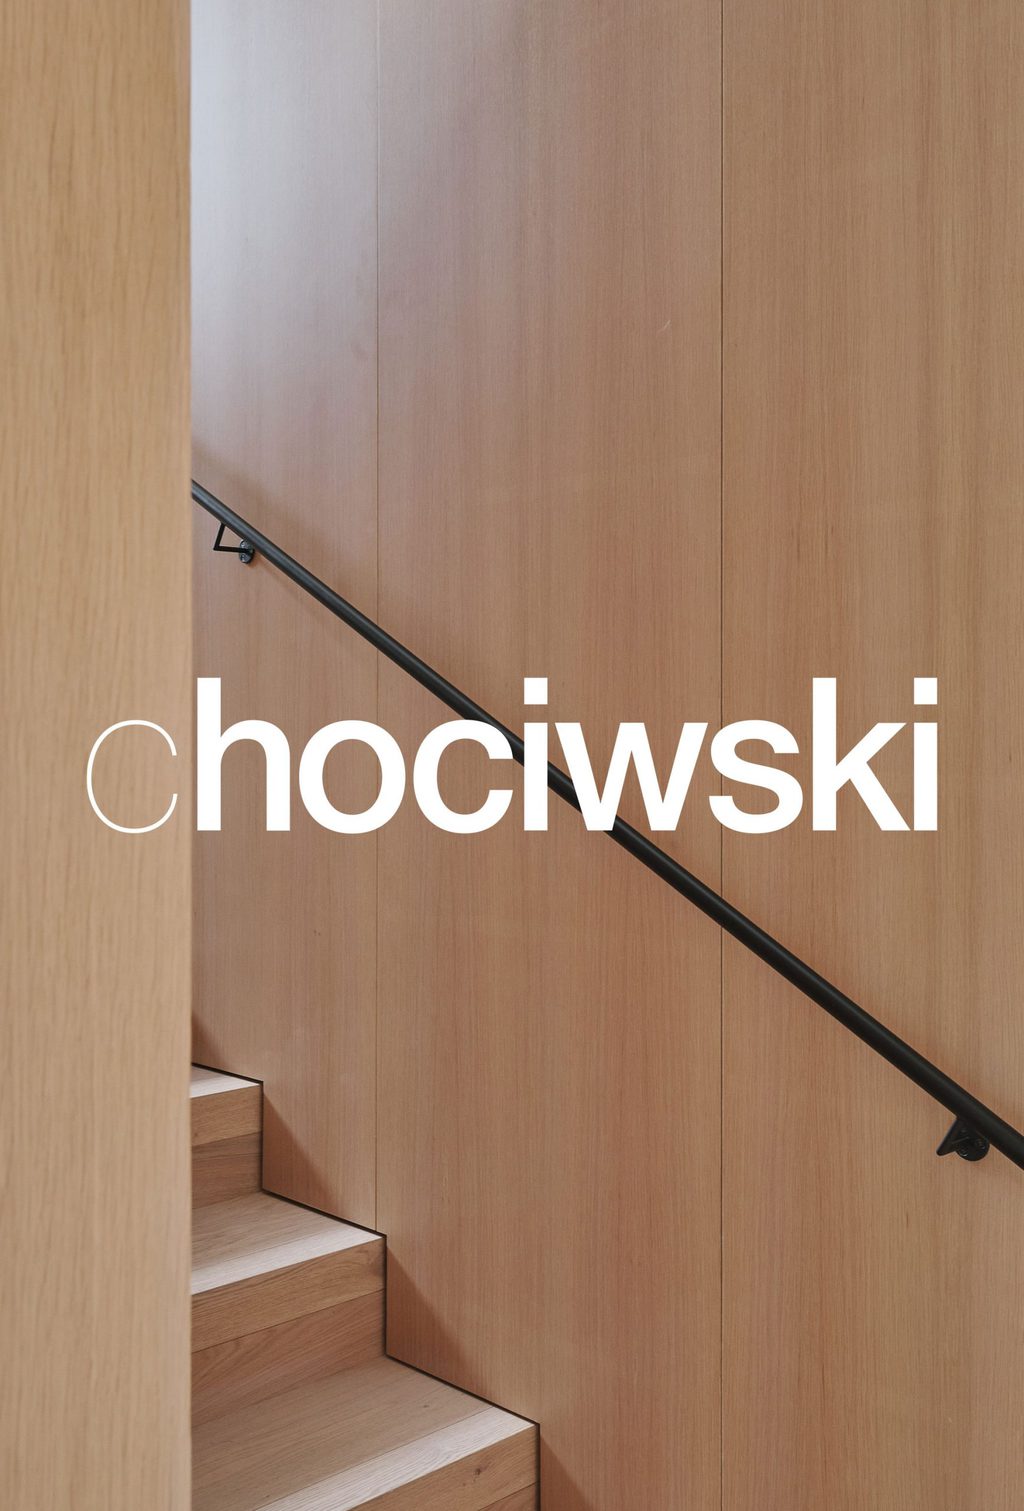 chociwski-logo-architektur